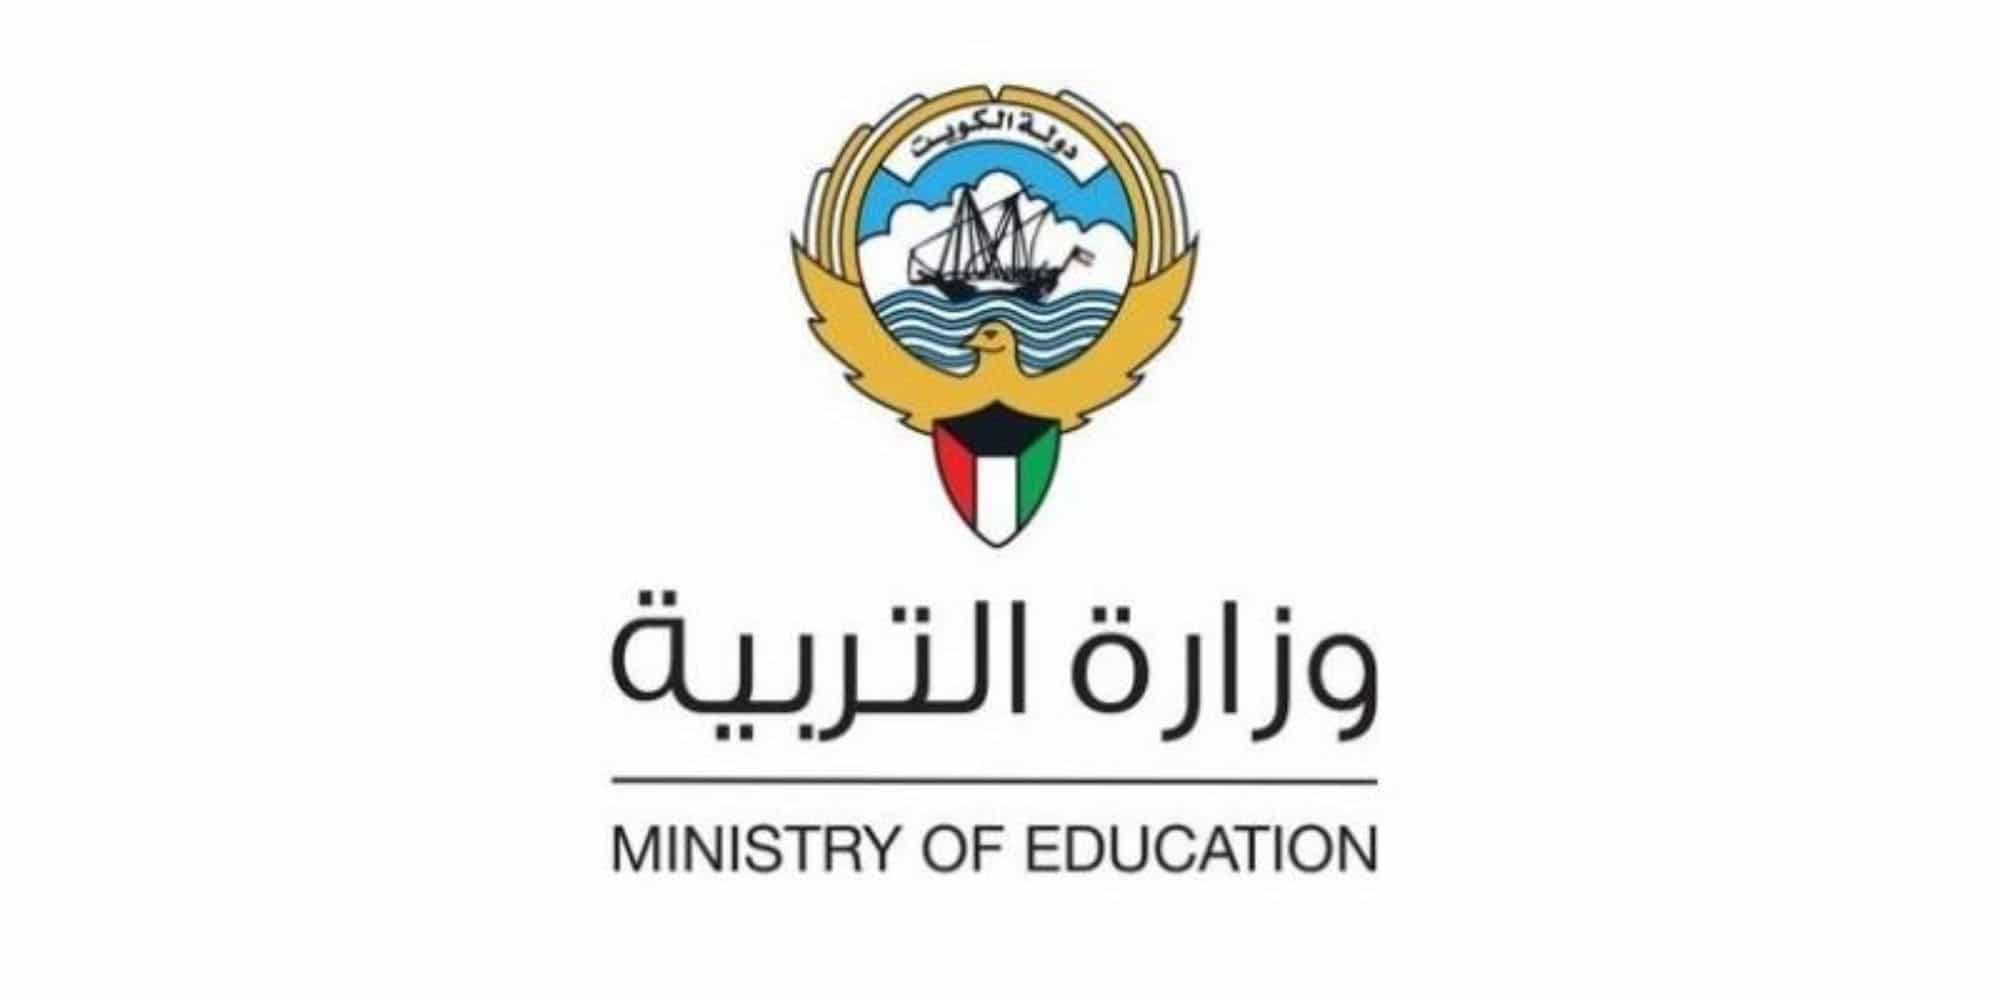 طريقة التسجيل في بوابة الكويت التعليمية 1444 من خلال بوابة وزارة التربية والتعليم